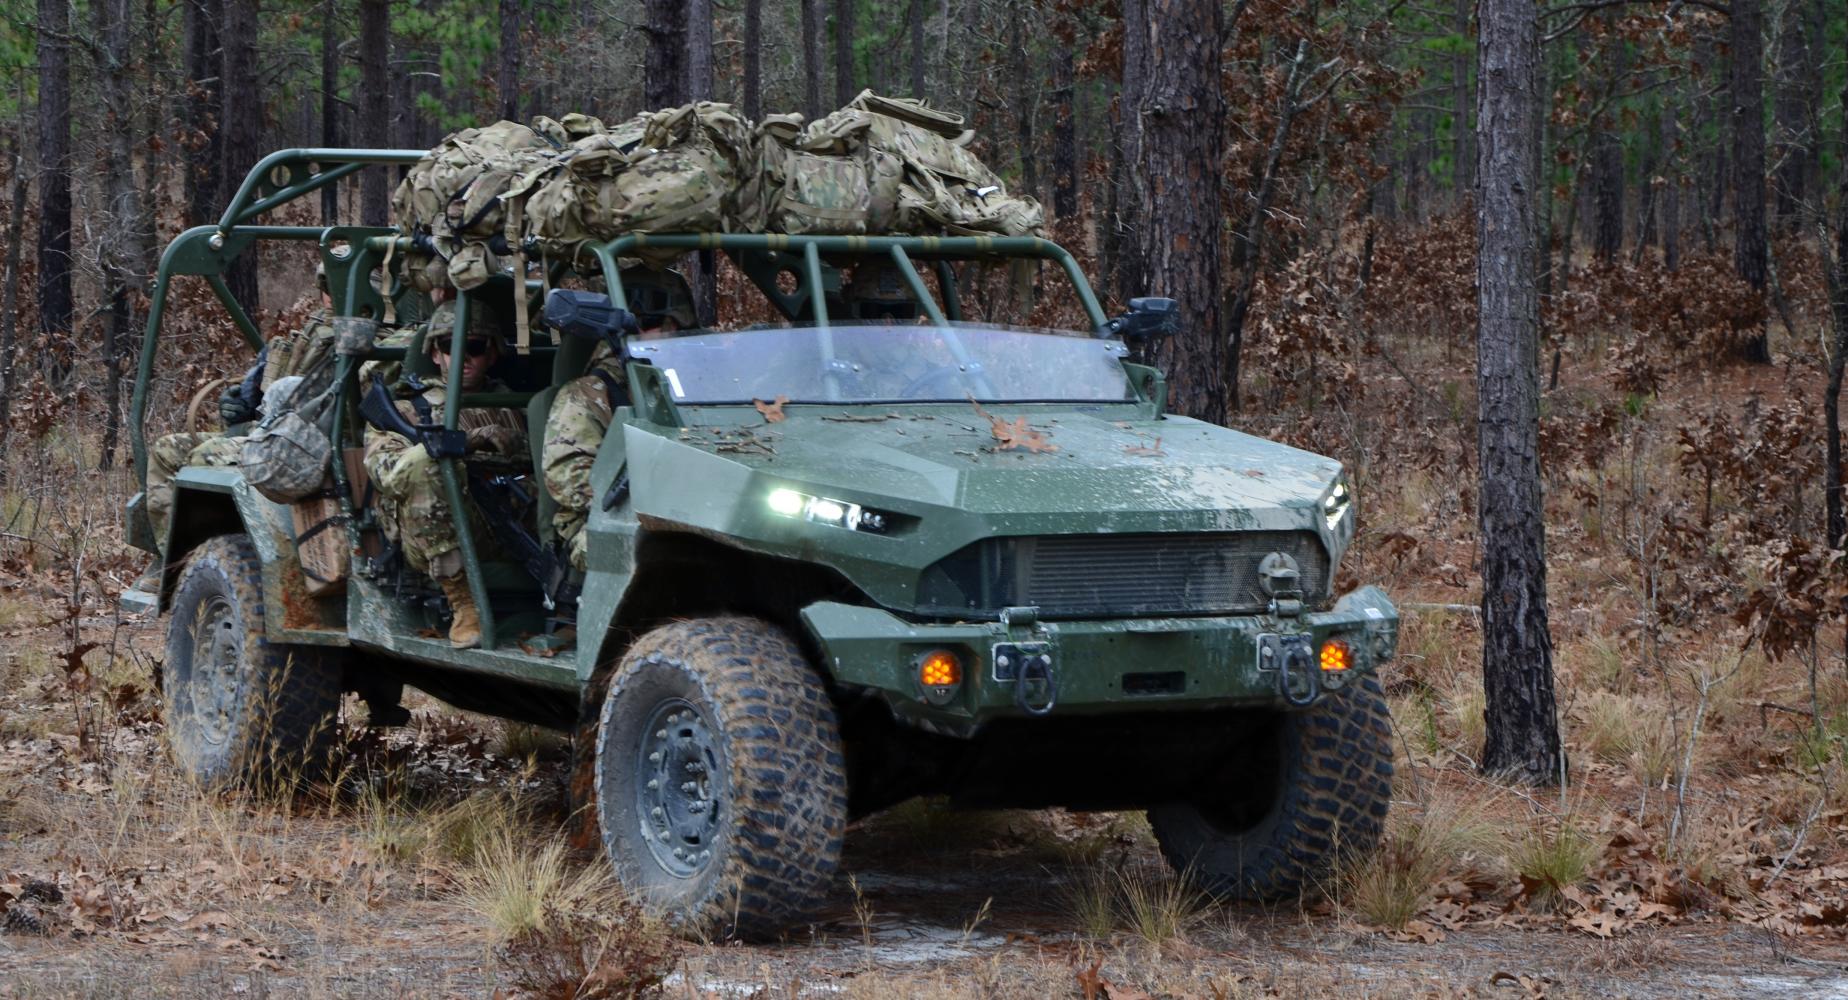 Infantry Squad Vehicle